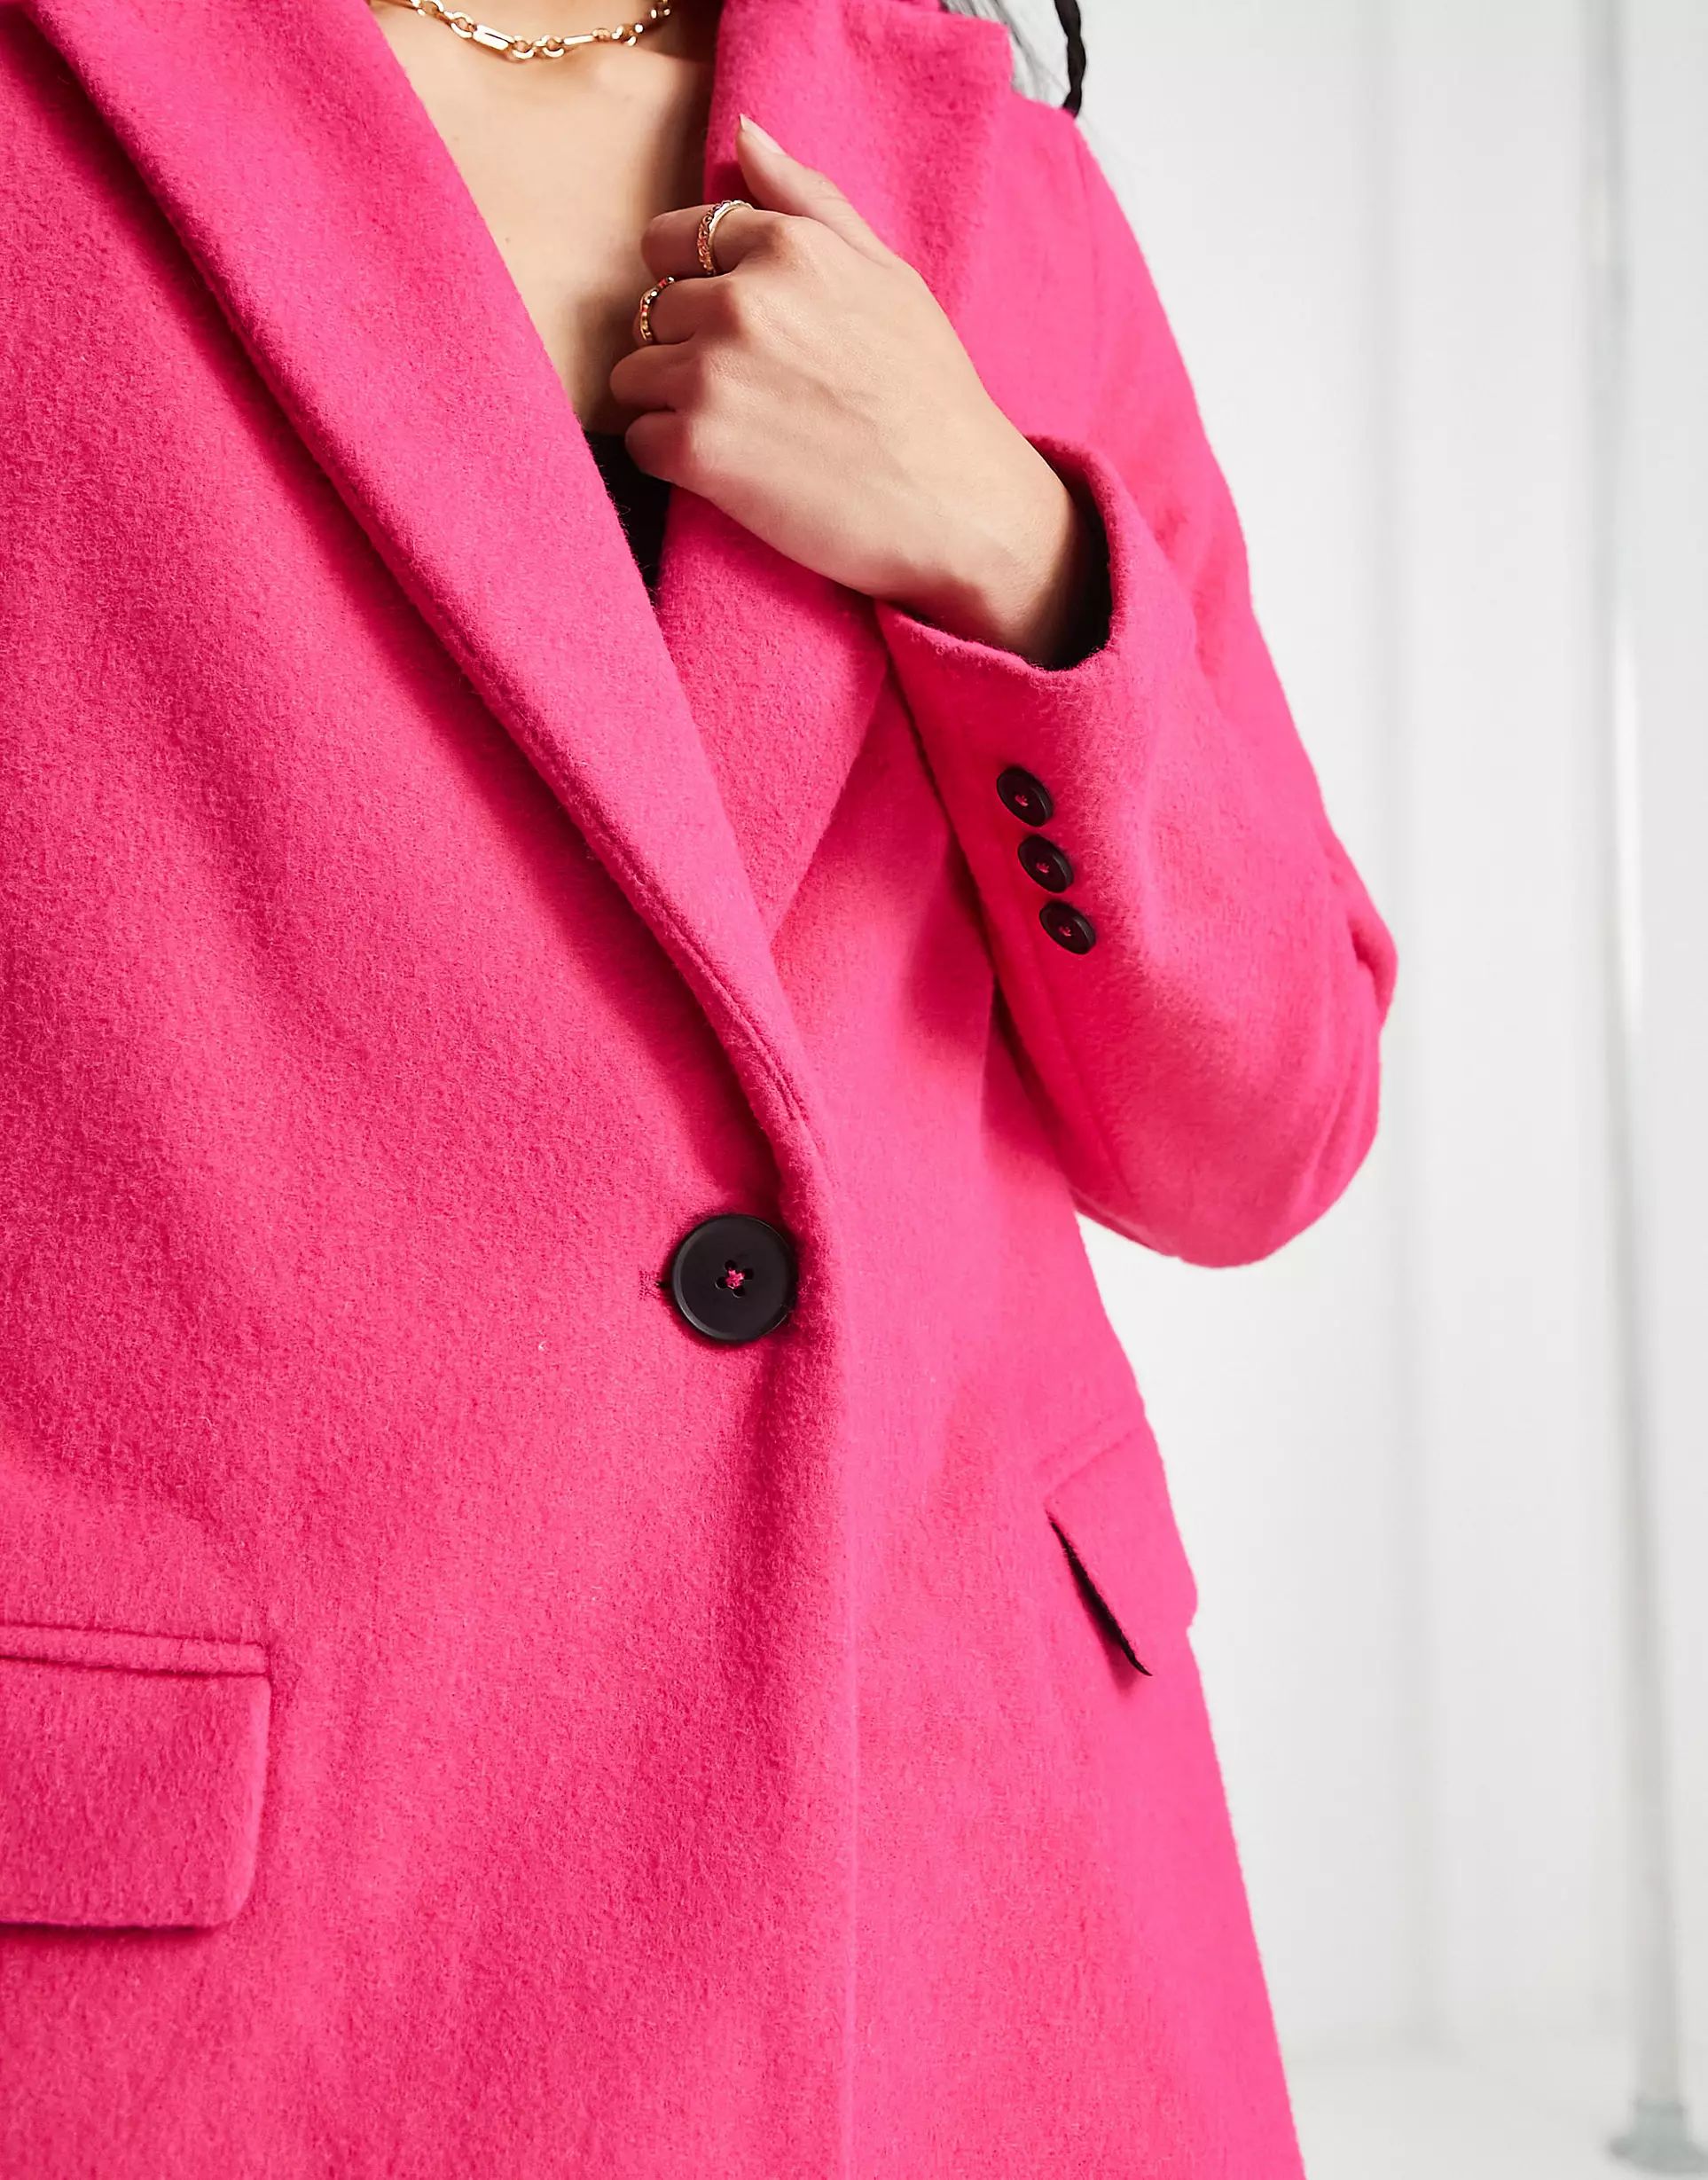 New Look - Manteau doublé élégant avec boutons sur le devant - Rose | ASOS (Global)